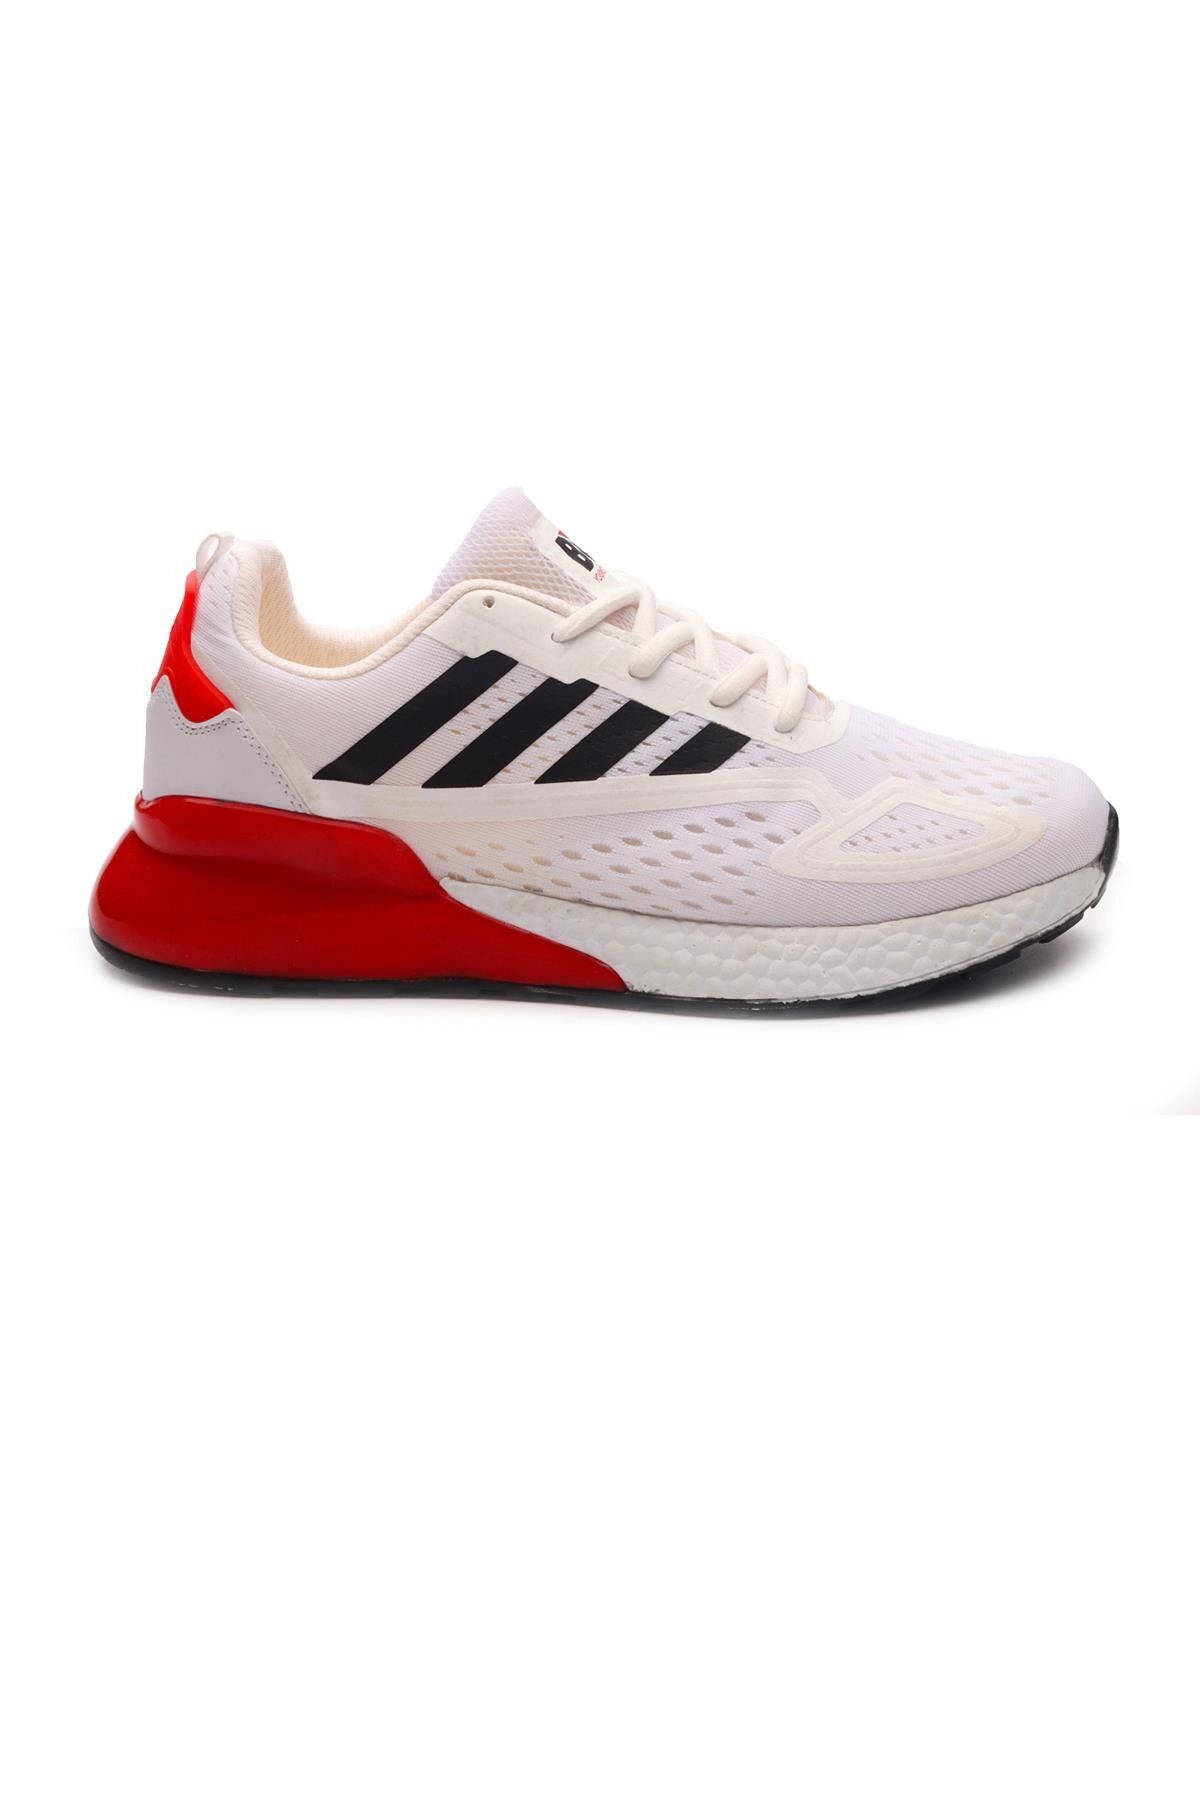 Bulldozer 221401 Beyaz Kırmızı Erkek Spor Ayakkabı